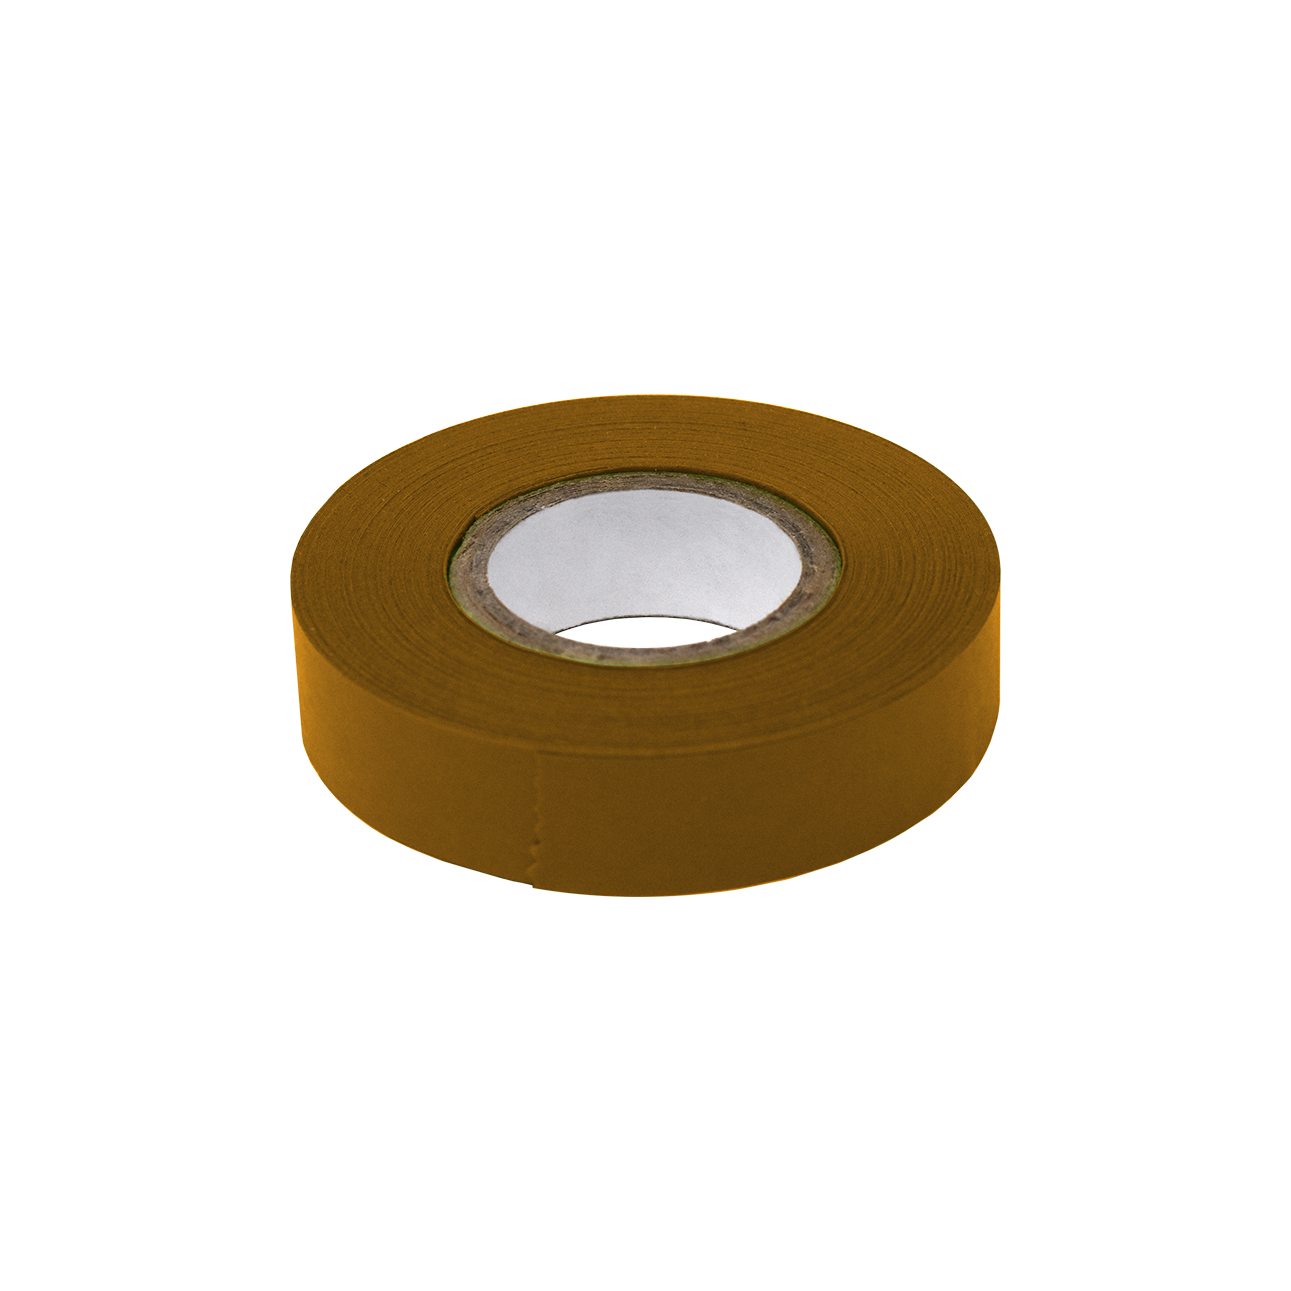 Globe Scientific Labeling Tape, 1/2" x 500" per Roll, 6 Rolls/Box, Copper 